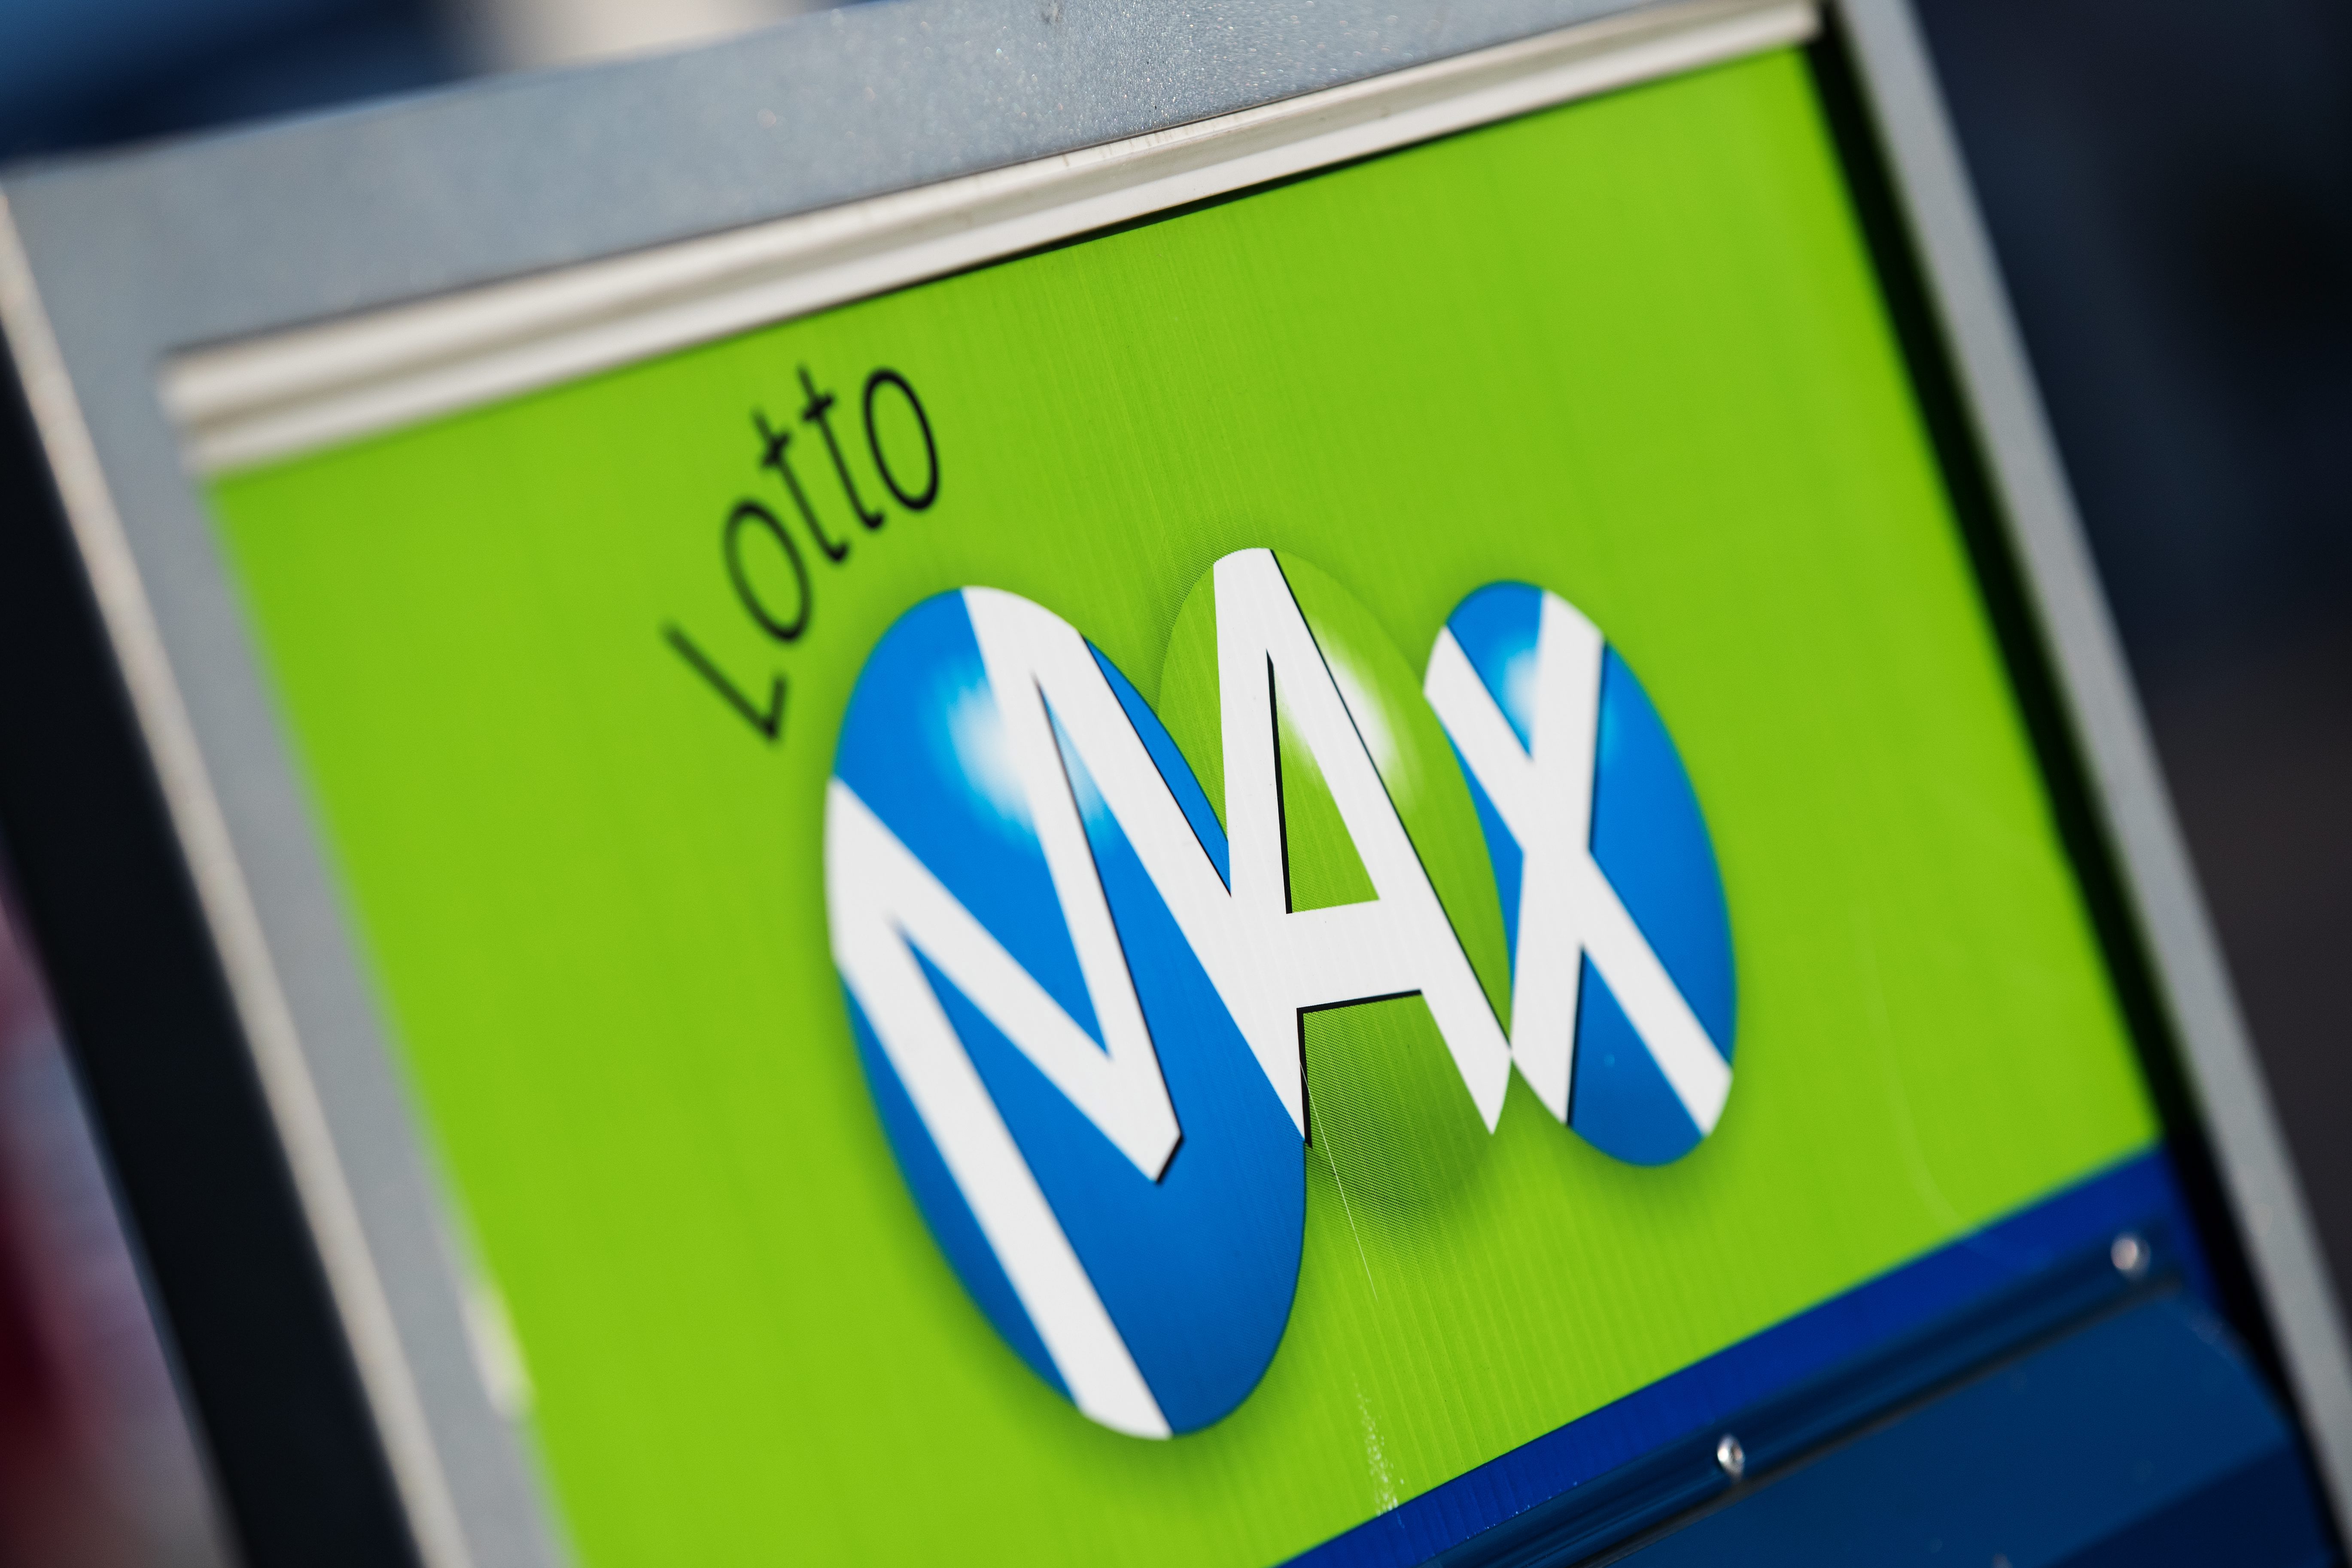 lotto max aug 6 2019